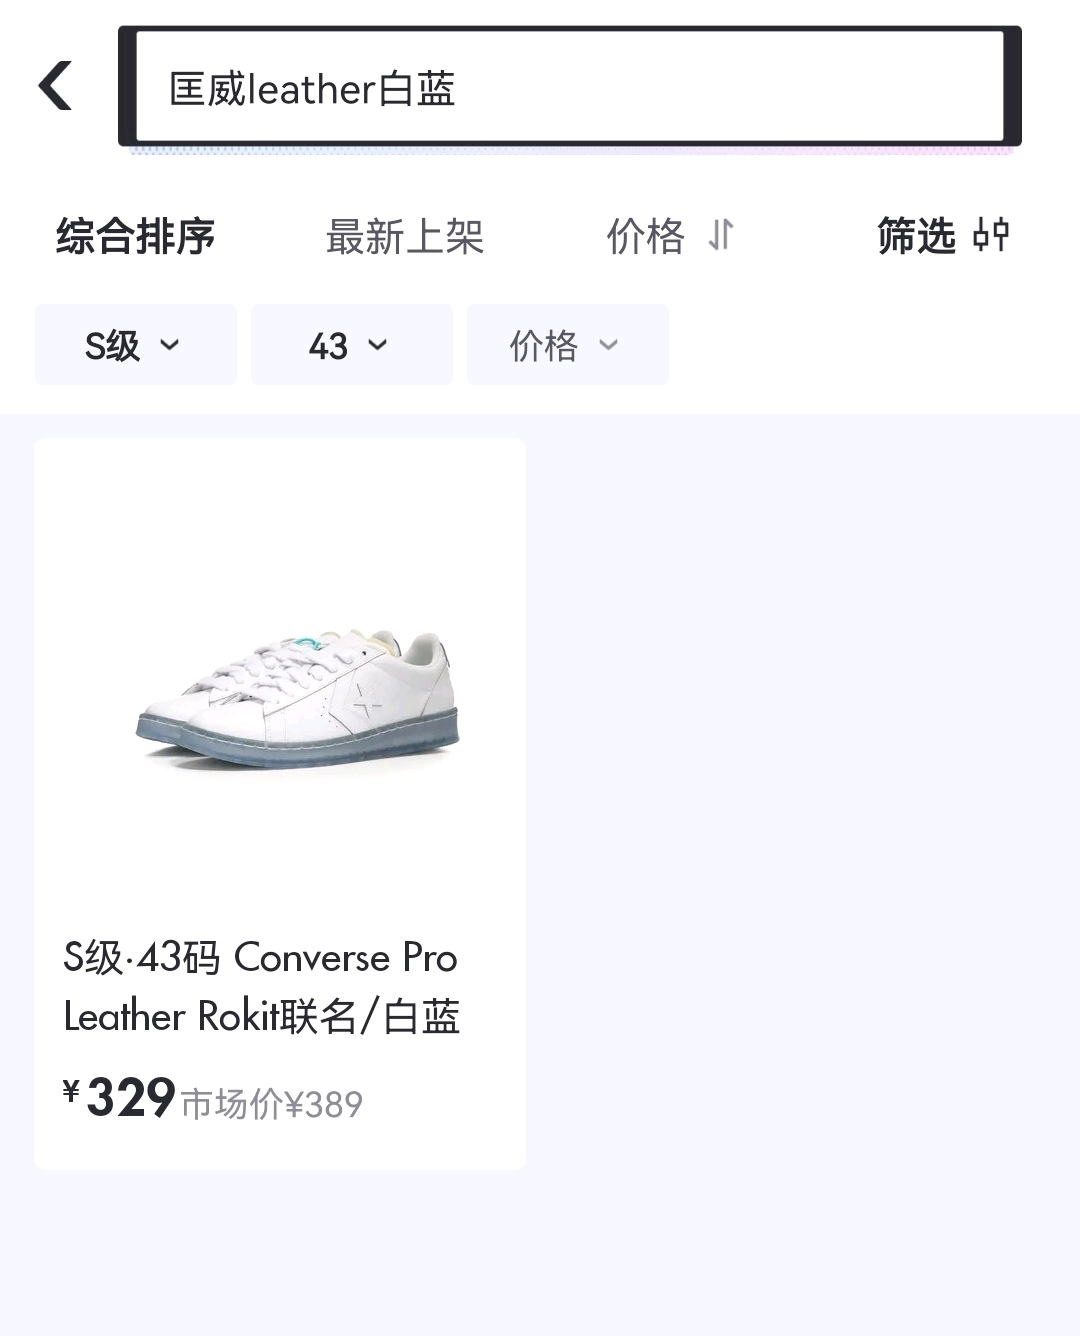 怎么买便宜又正品的护肤品_在韩国买奢饰品便宜还是香港买便宜_哪里买球鞋正品又便宜